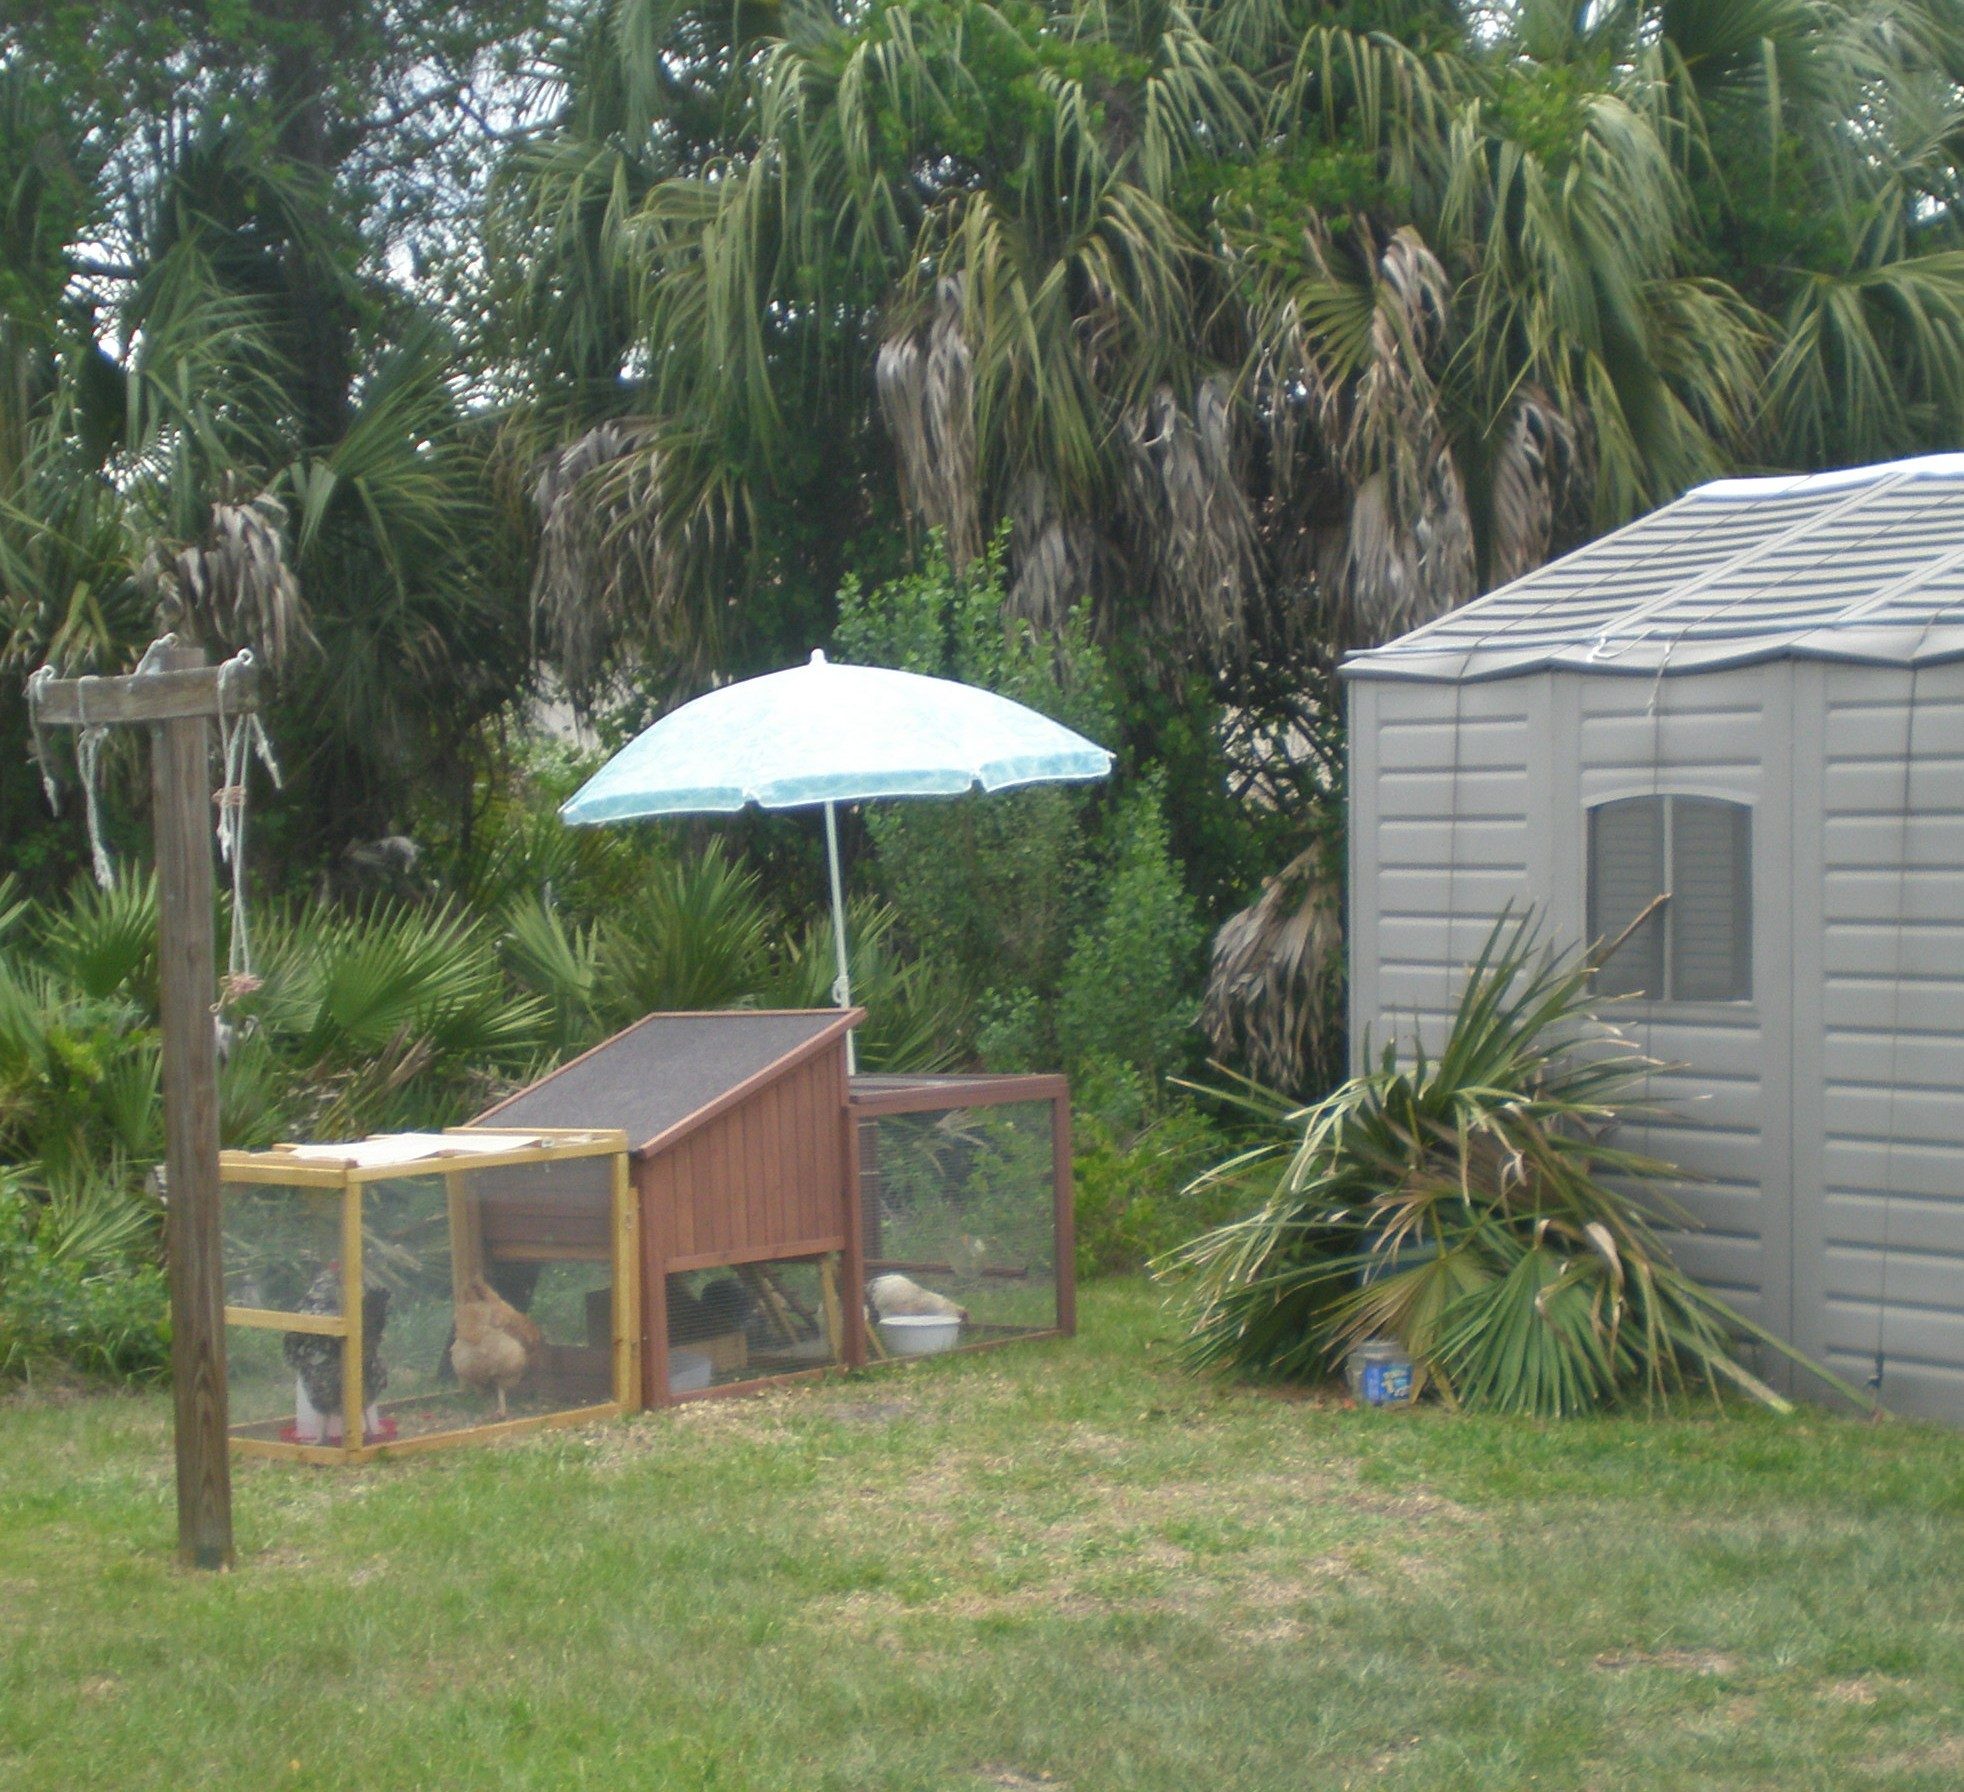 Jungle Nesting Box for free range OEG Hen.